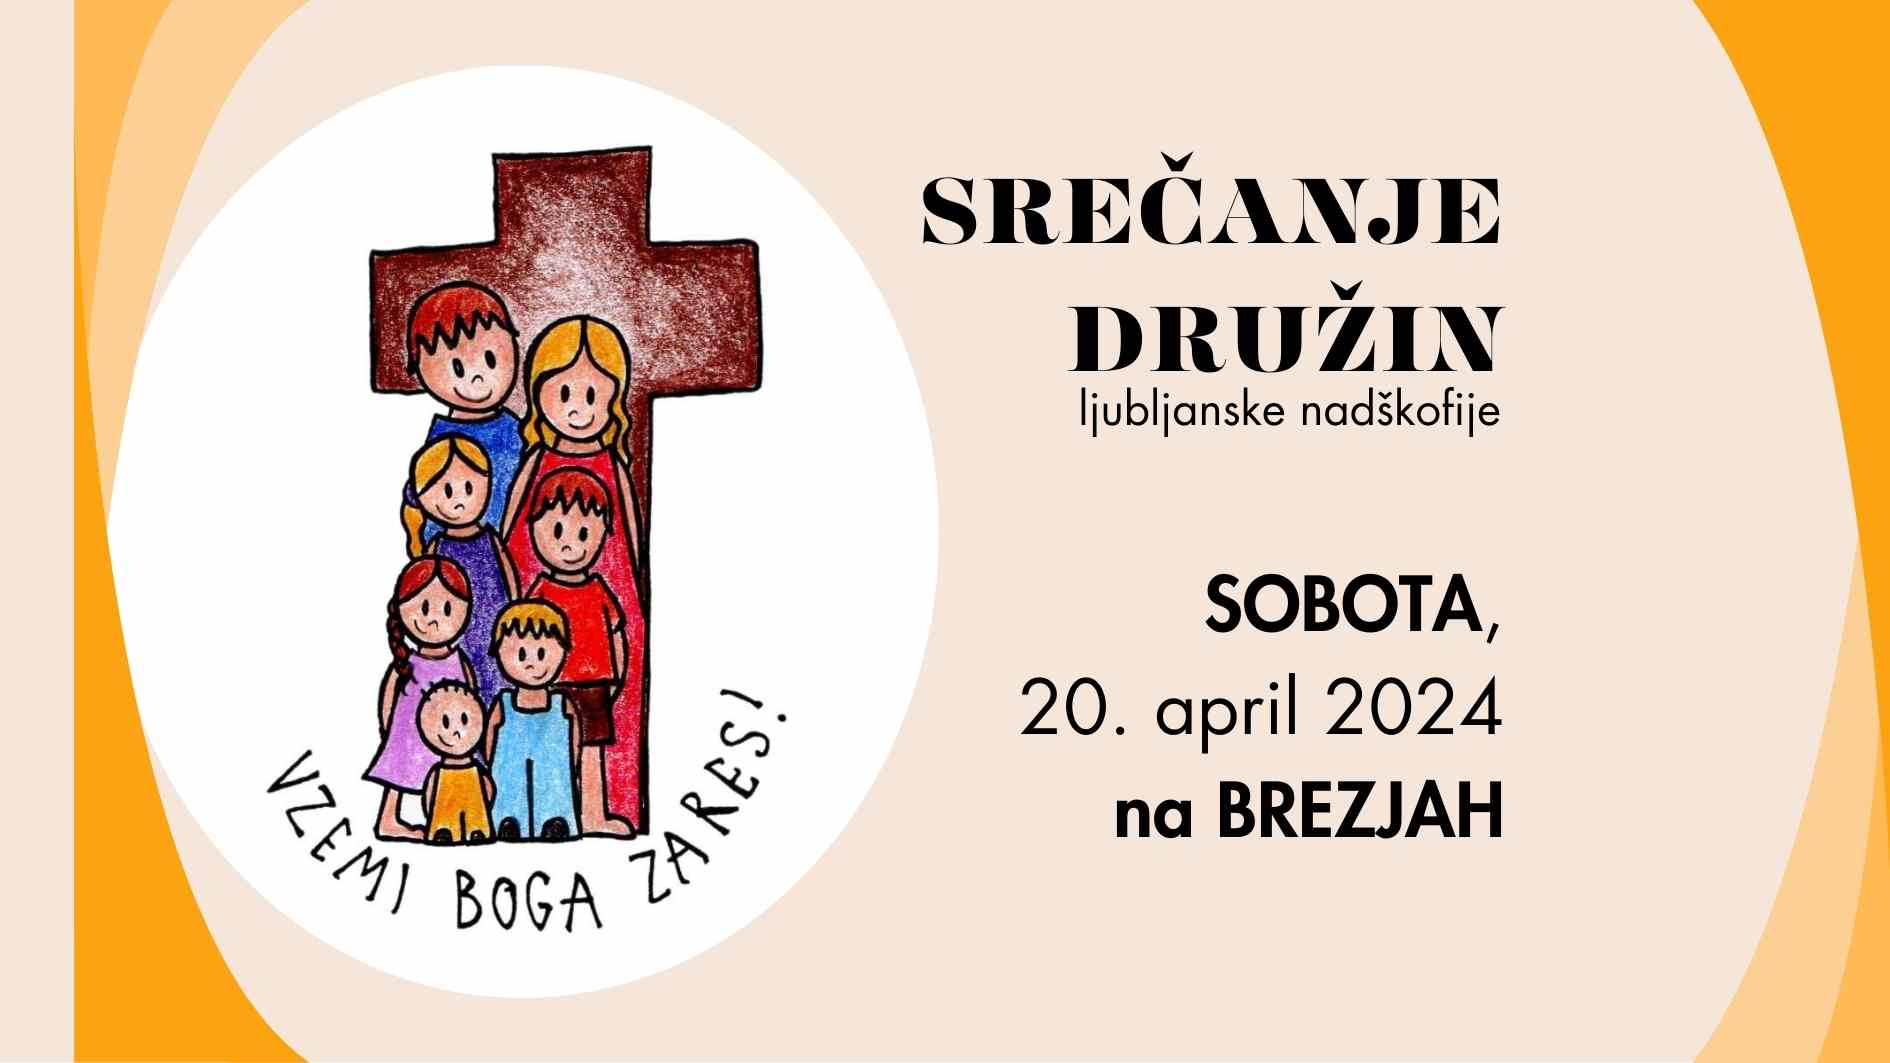 <strong>Srečanje družin</strong> ljubljanske nadškofije v <em>soboto 20. 4.</em> na Brezjah